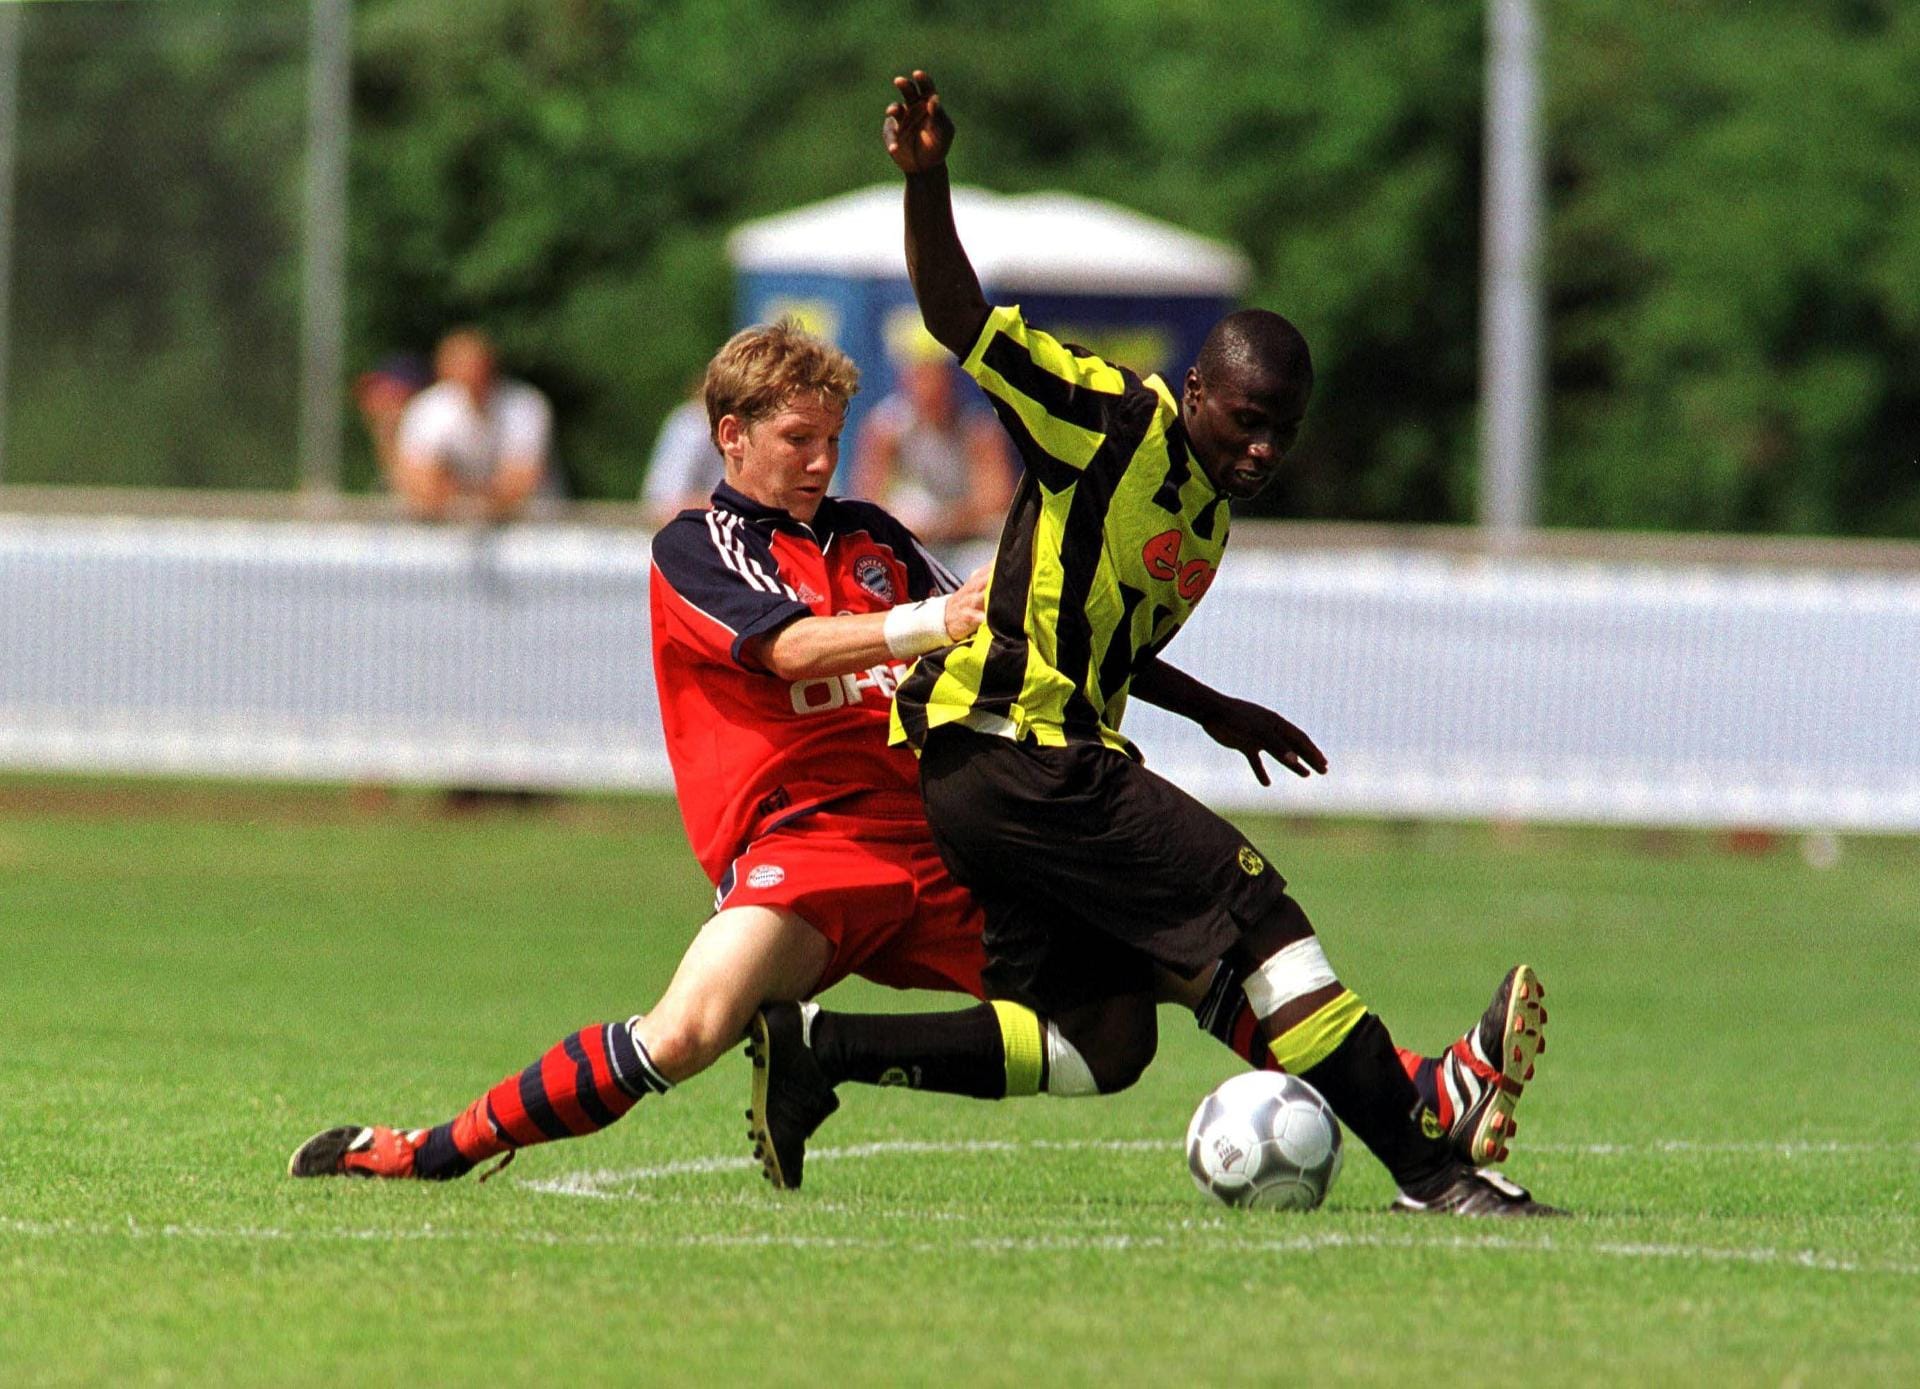 1998 wechselt Bastian Schweinsteiger vom TSV 1860 Rosenheim zum FC Bayern München. 2001 gewinnt er mit seinem neuen Team die B-Jugend-Meisterschaft (hier im Finale beim Zweikampf mit dem Dortmunder Sahr Senesie), ein Jahr später dann den Titel mit der A-Jugend.